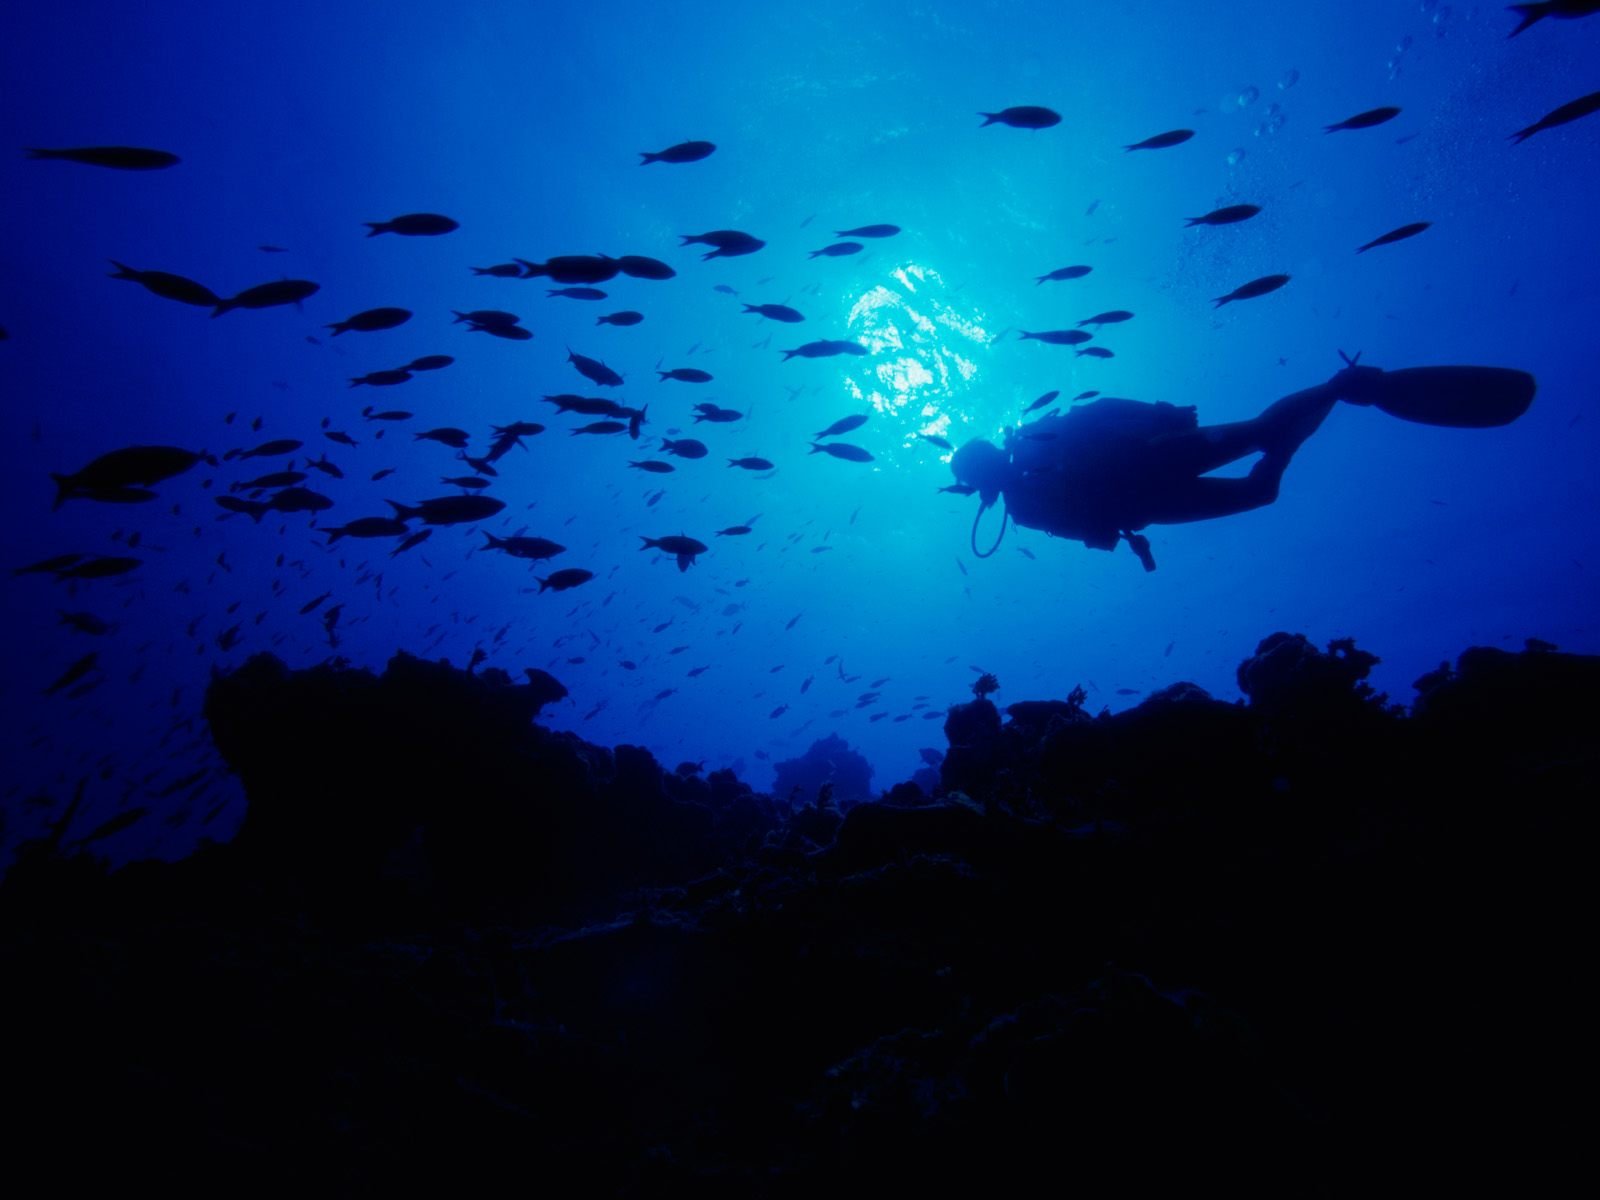 scuba, Diving, Diver, Ocean, Sea, Underwater, Fish Wallpaper